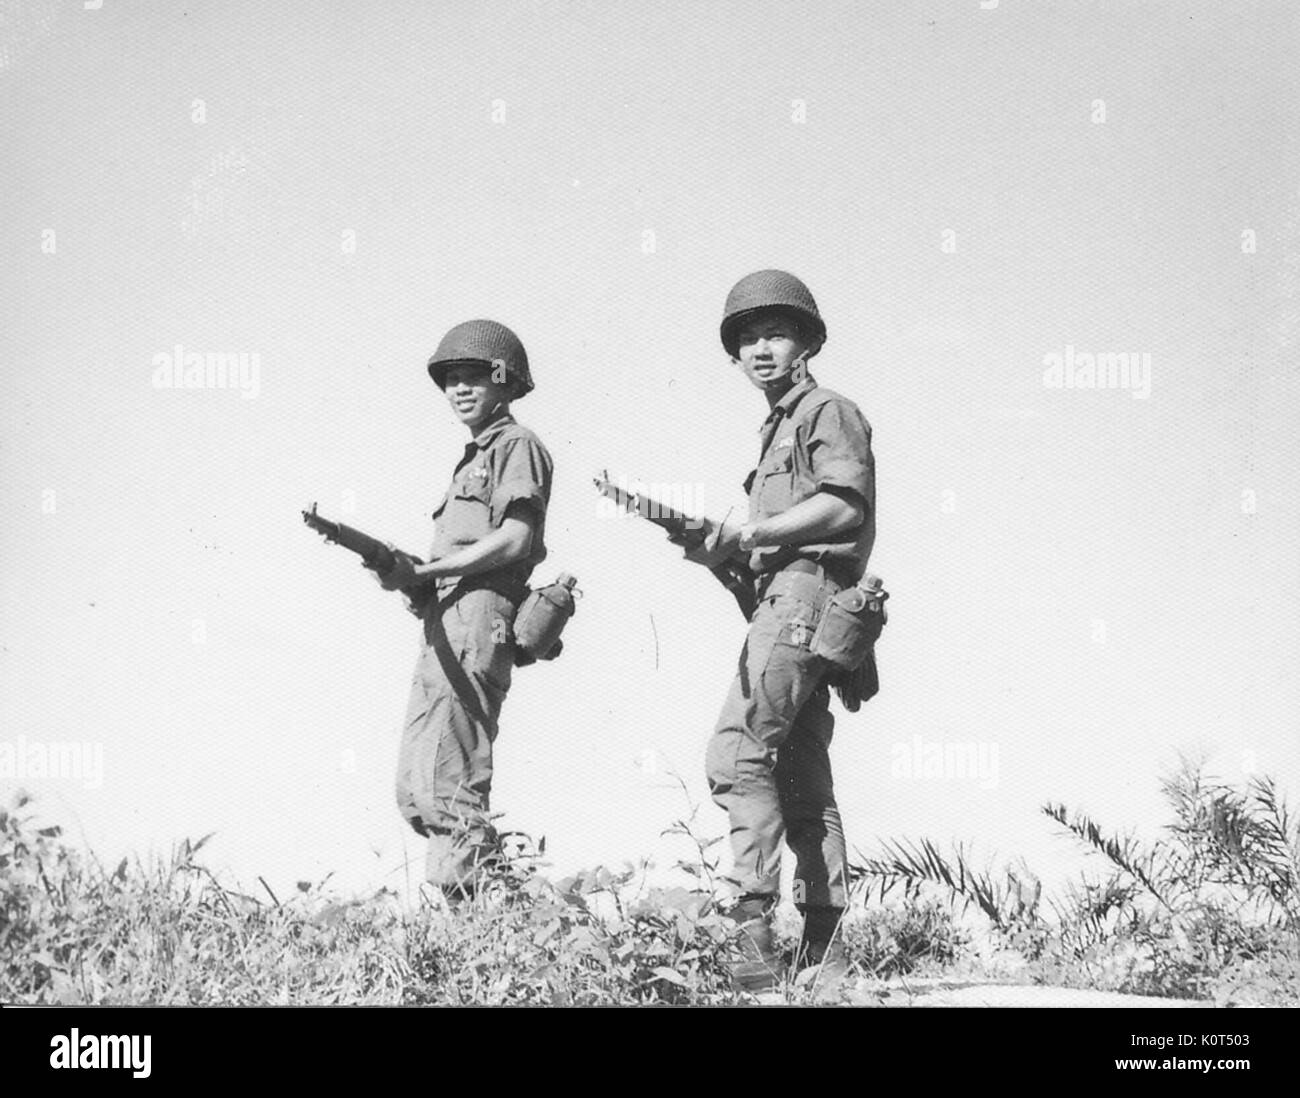 Ein Foto von zwei Soldaten der Armee der Republik Vietnam, die aufgeworfen werden auf einem Hügel, während ihre Bekämpfung Gewehre auf Taillenhöhe, Vietnam, 1968. Stockfoto